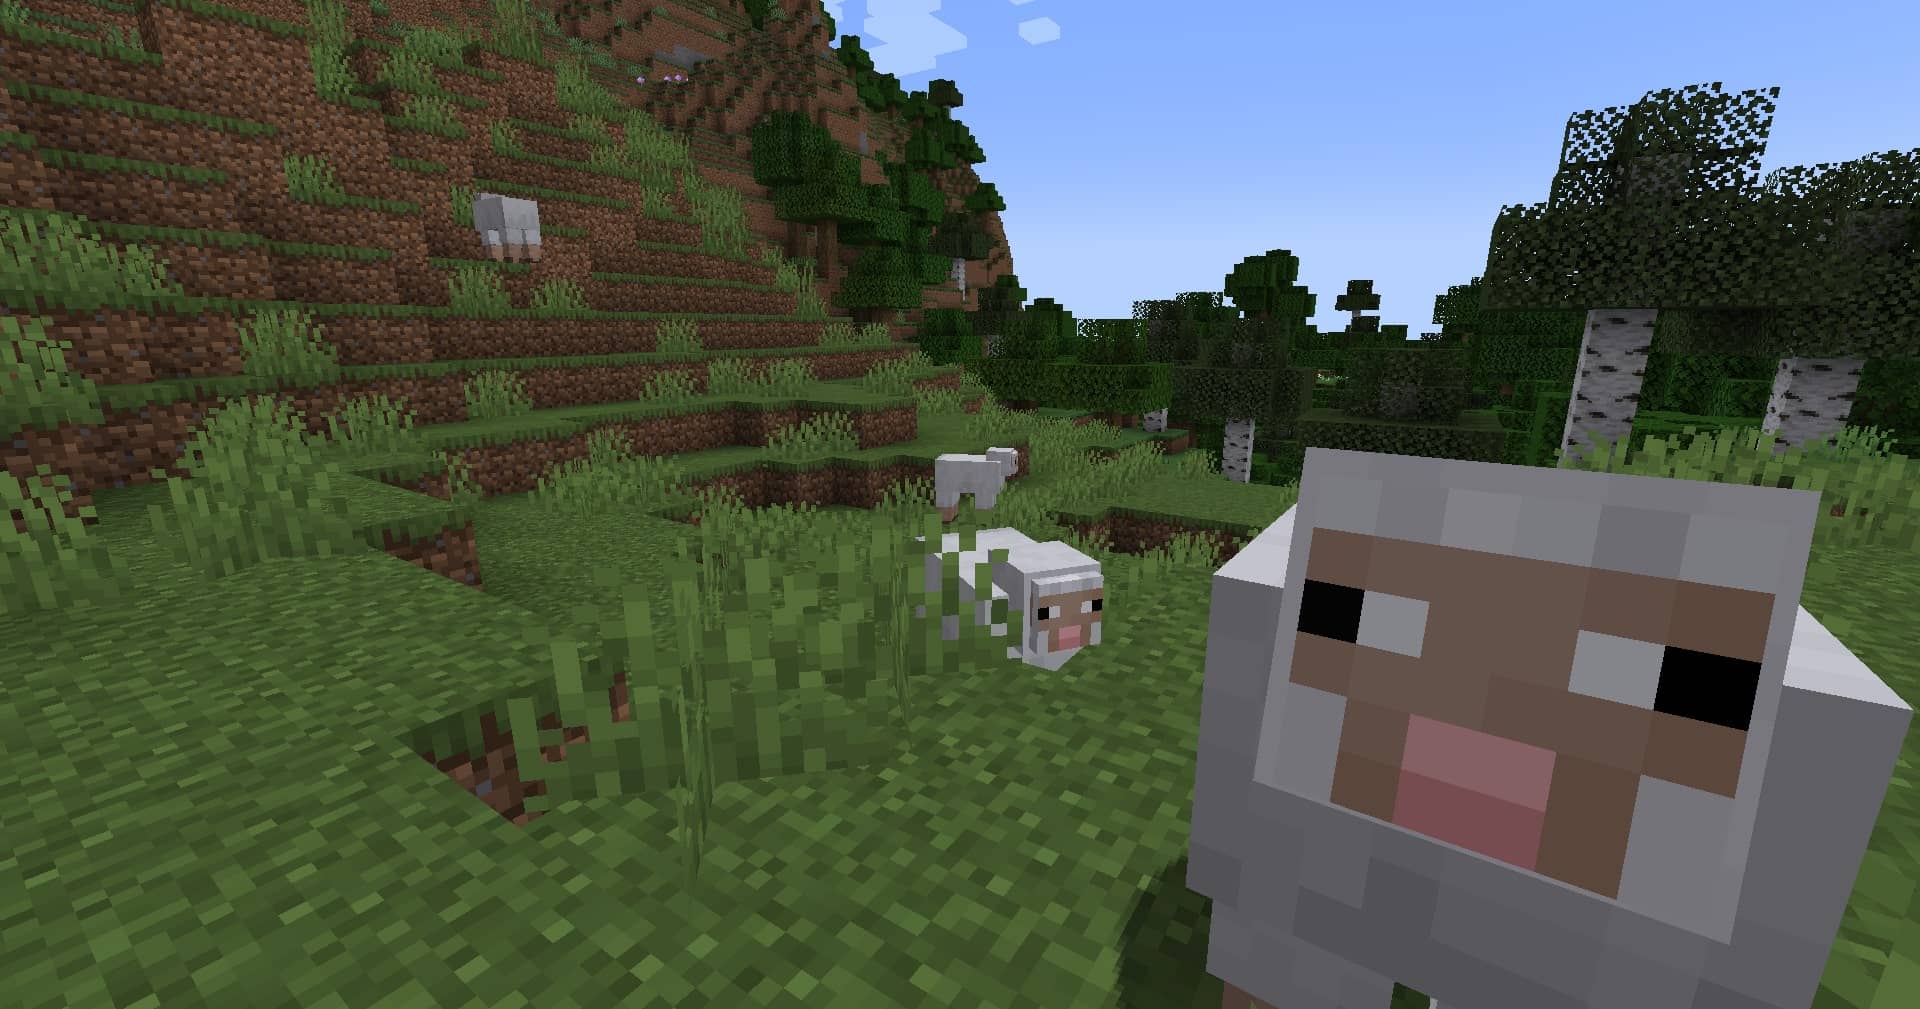 Đàn cừu xuất hiện tại đồng bằng cỏ